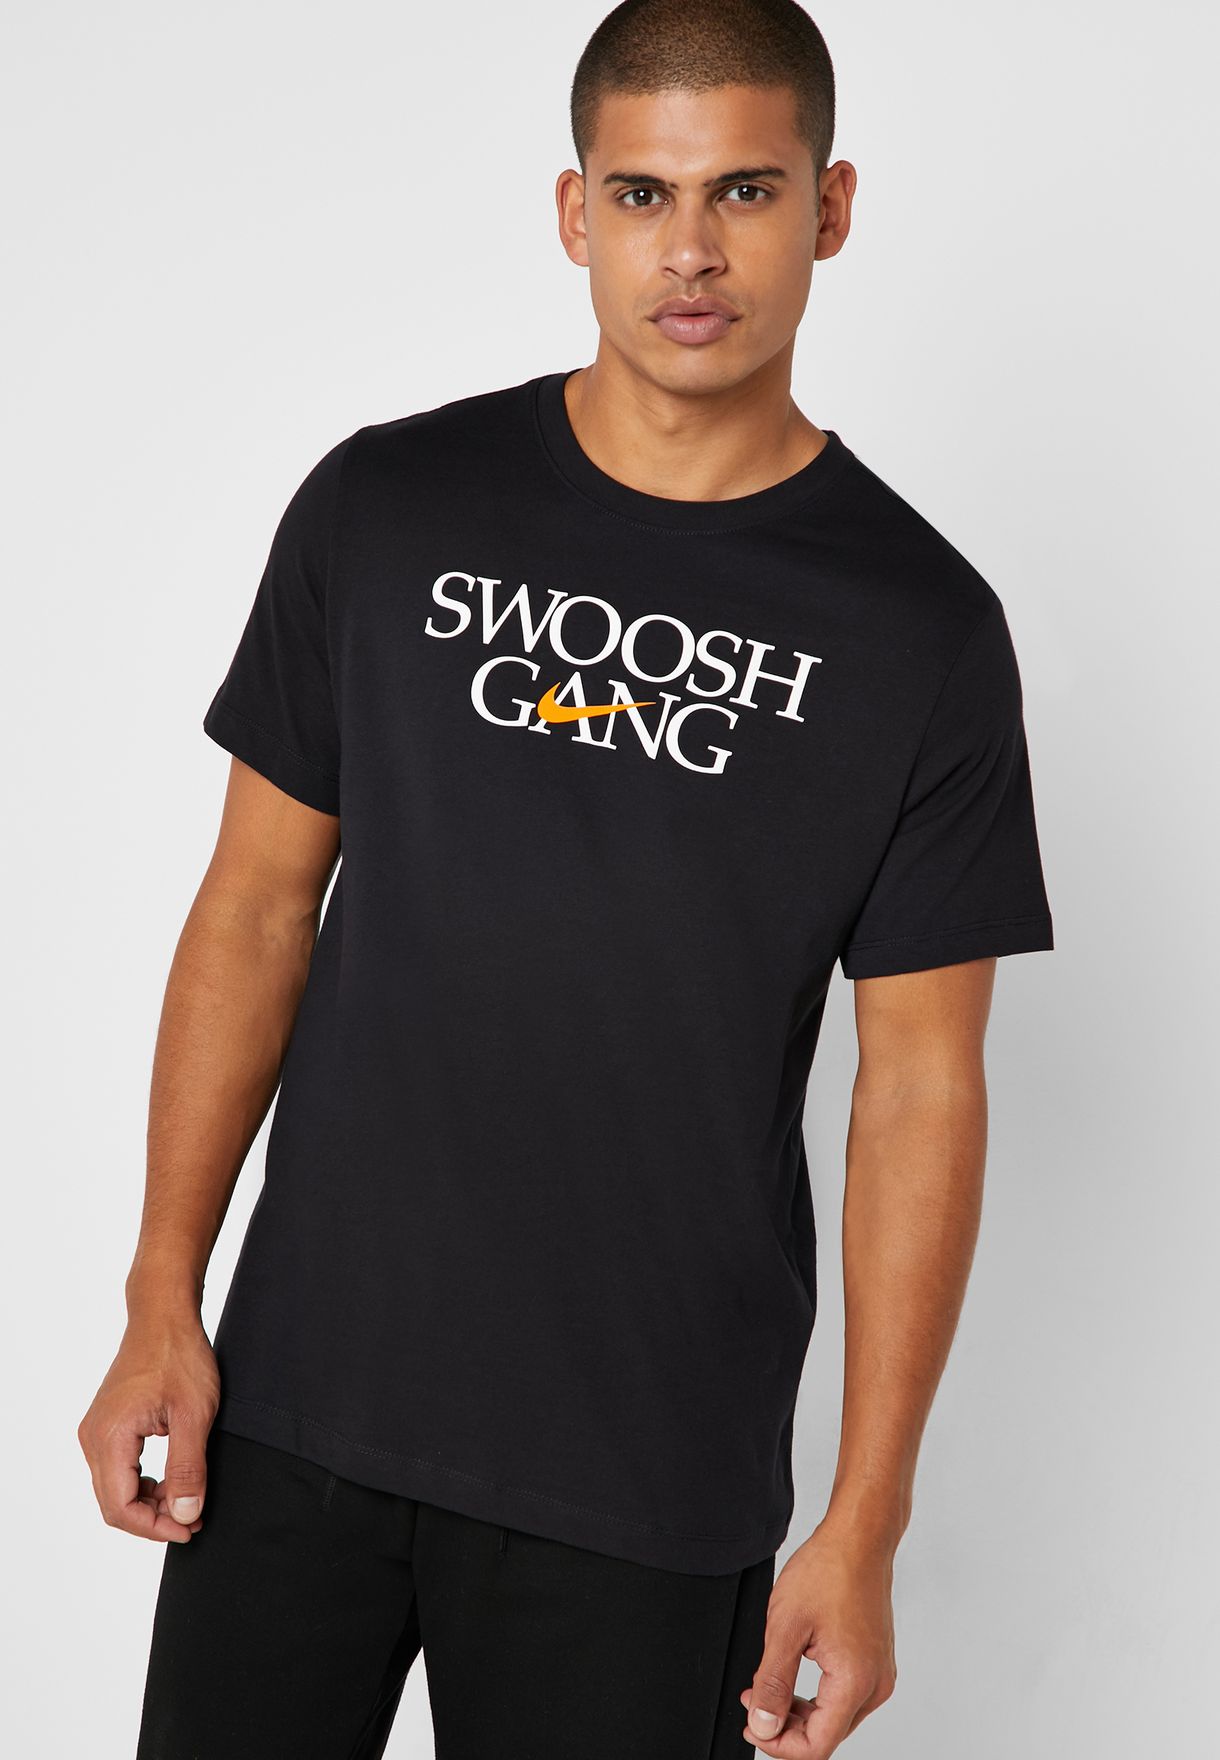 swoosh gang shirt